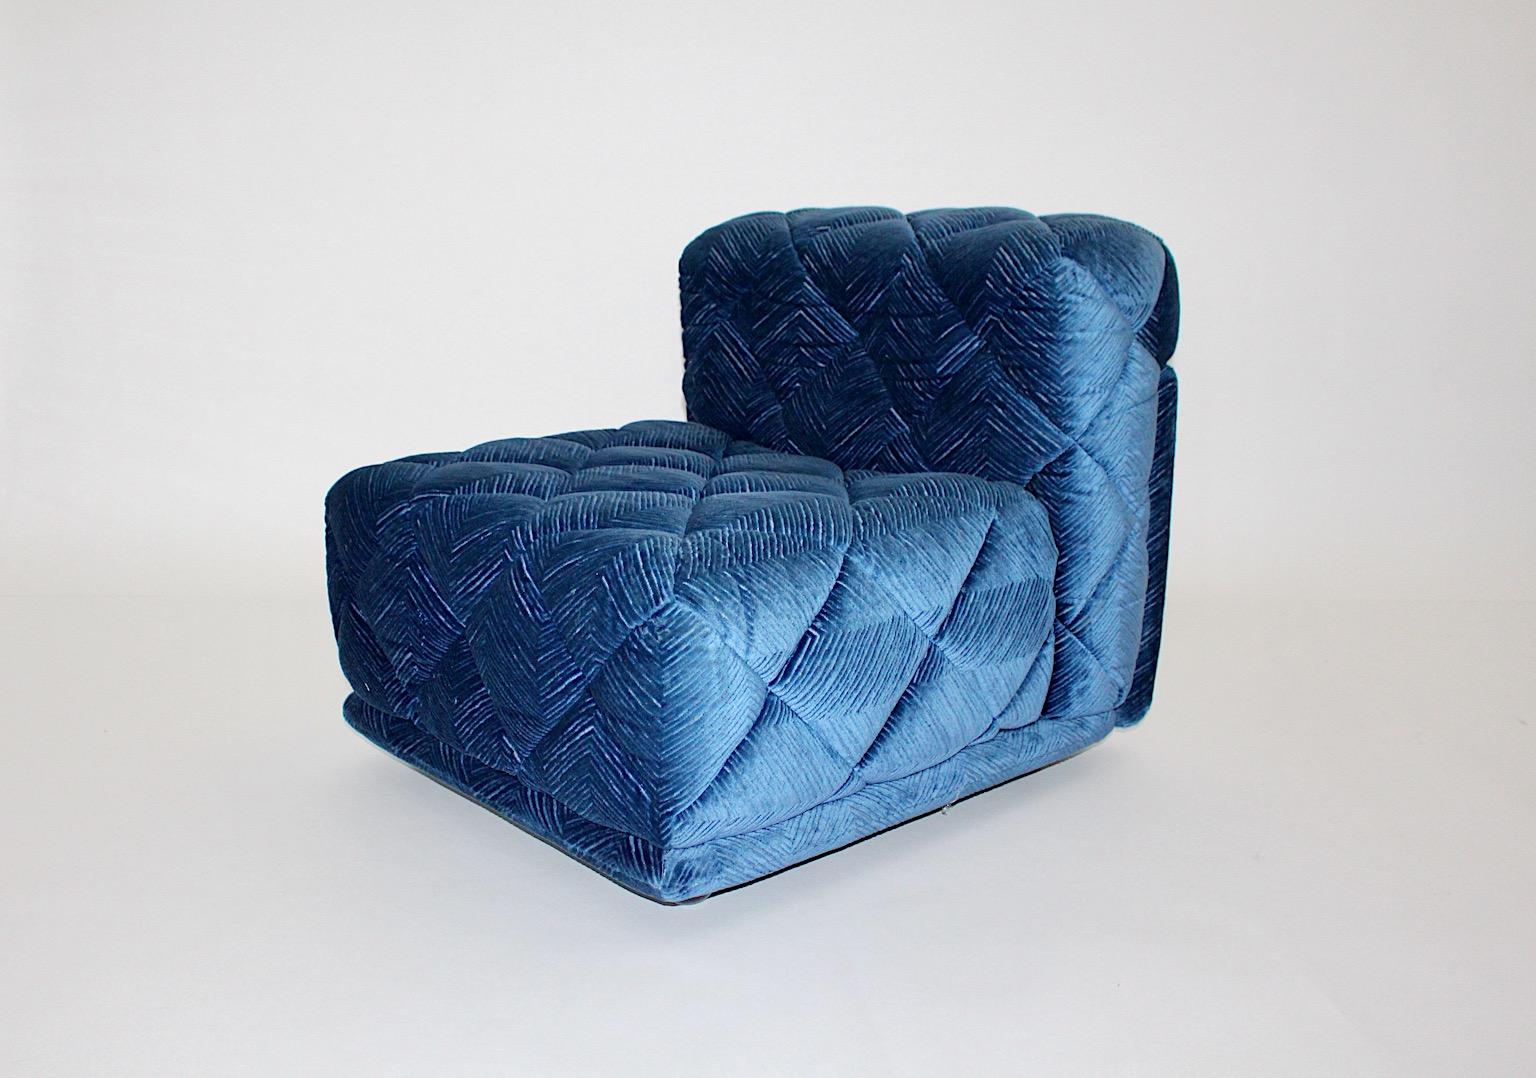 Space Age Vintage modulares Element oder Sofa oder Lounge-Sessel Modell Rhombos aus genähtem Samtstoff in blauer Farbe von Wittmann 1970er Jahre Österreich.
Ein wundervolles modulares Sofaelement oder ein Loungesessel, bezogen mit einem genähten